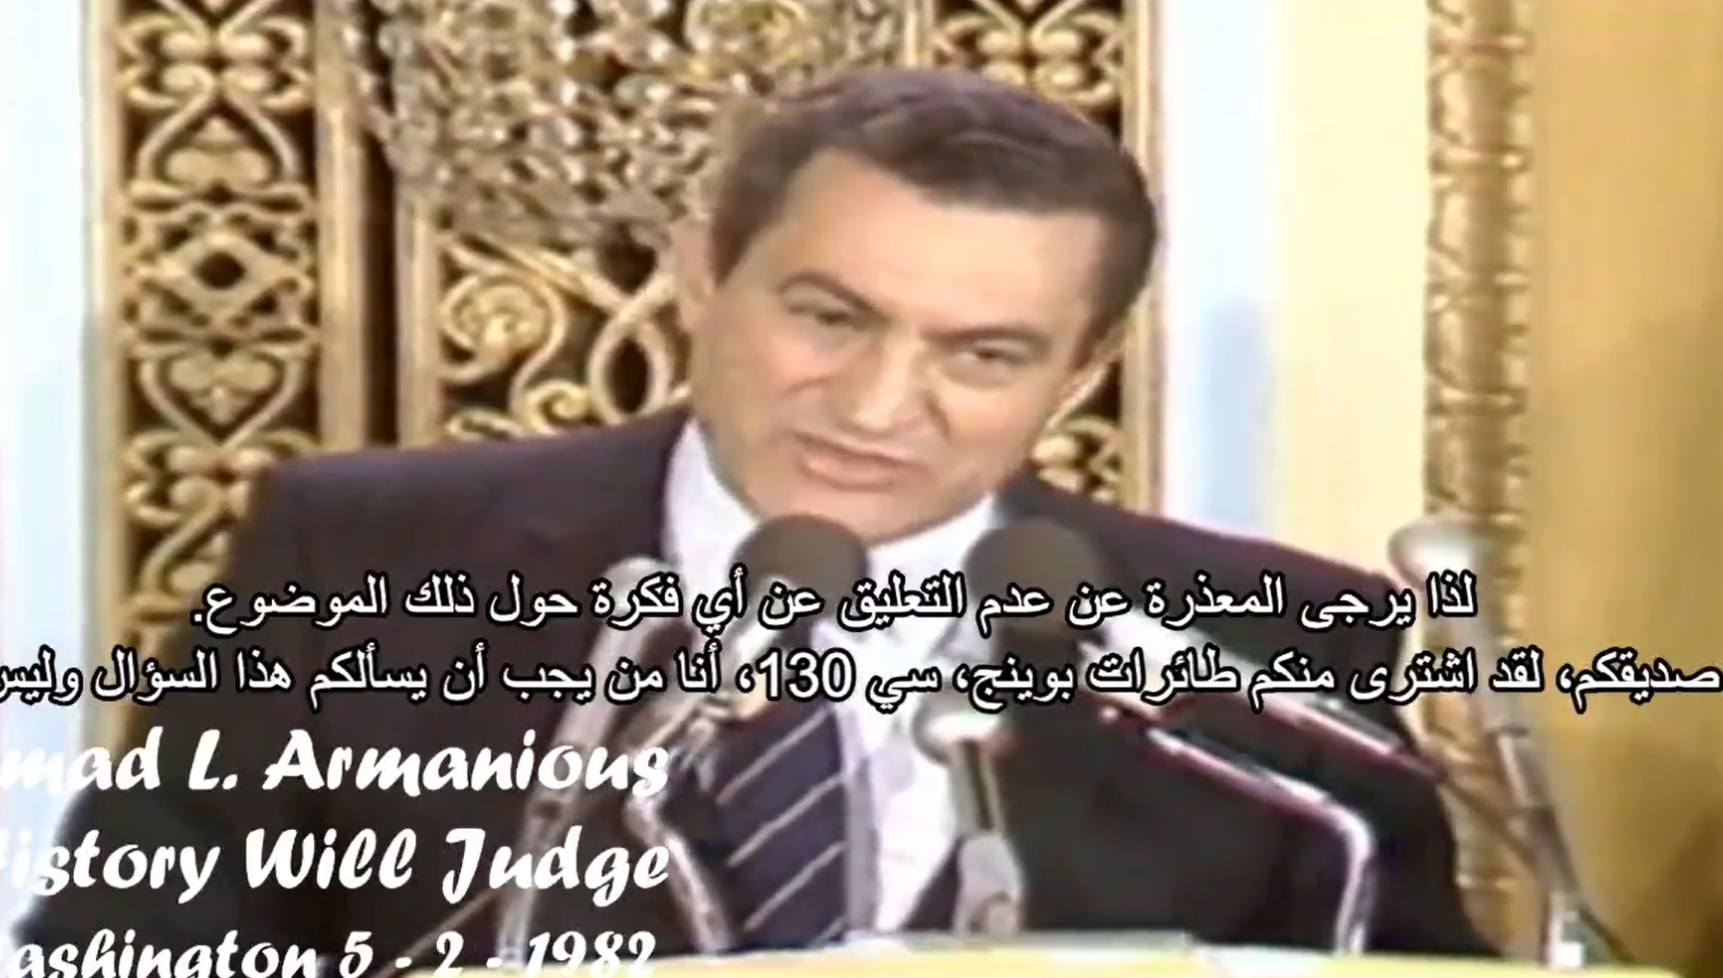 أضحك الجميع.. كيف هرب مبارك من فخ "السؤال المحرج" عن القذافي؟